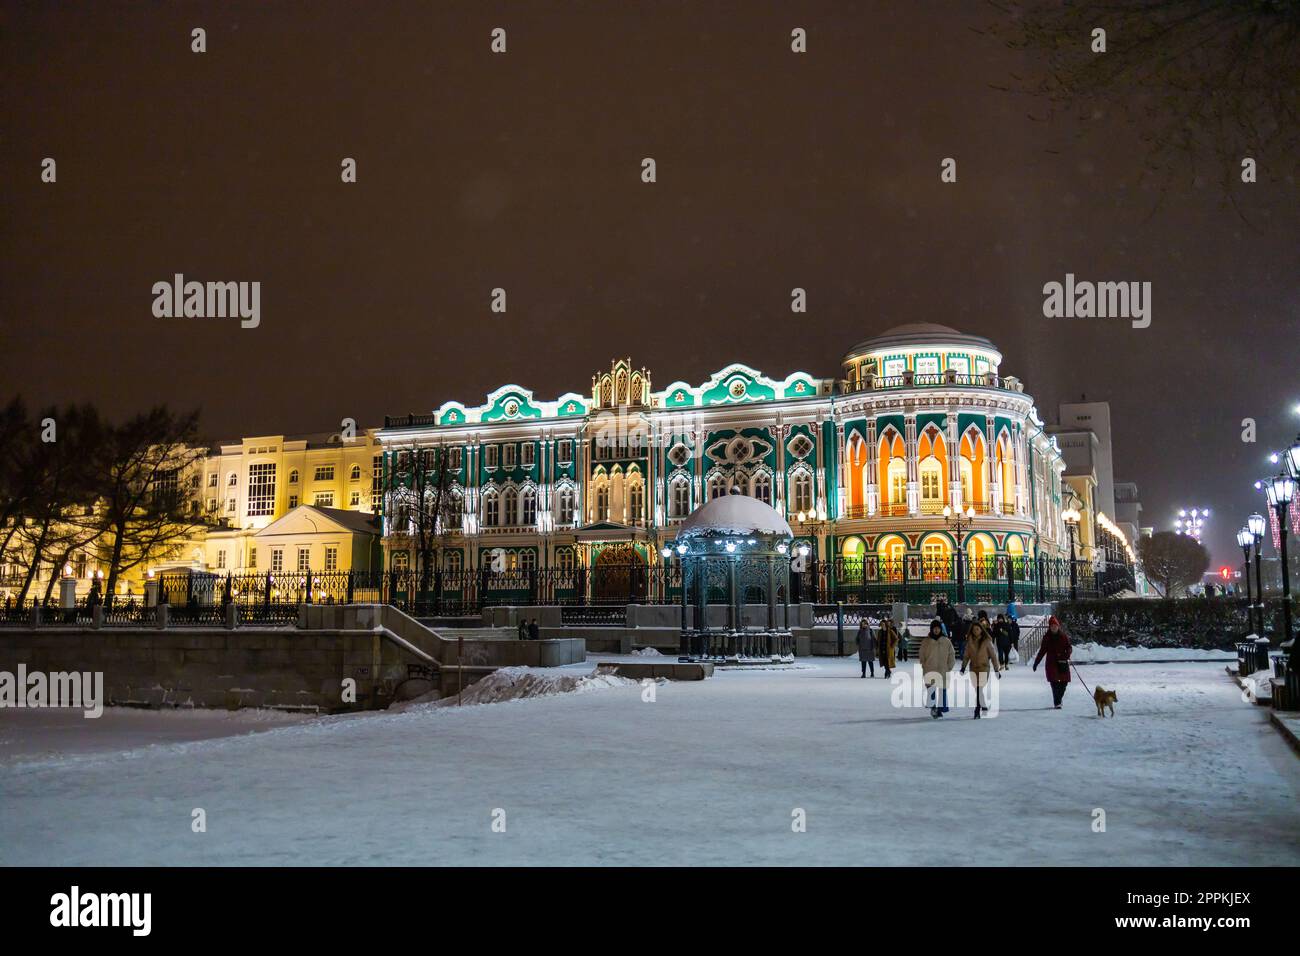 EKATERINBOURG, 18 décembre 2021 : Maison Sevastyanov aussi Chambre des syndicats à Ekaterinbourg en Russie la nuit et la saison hivernale. C'est un palais construit dans le premier quart du XIX siècle sur les rives de l'étang de la ville, formé par un barrage sur la rivière Iset. Banque D'Images